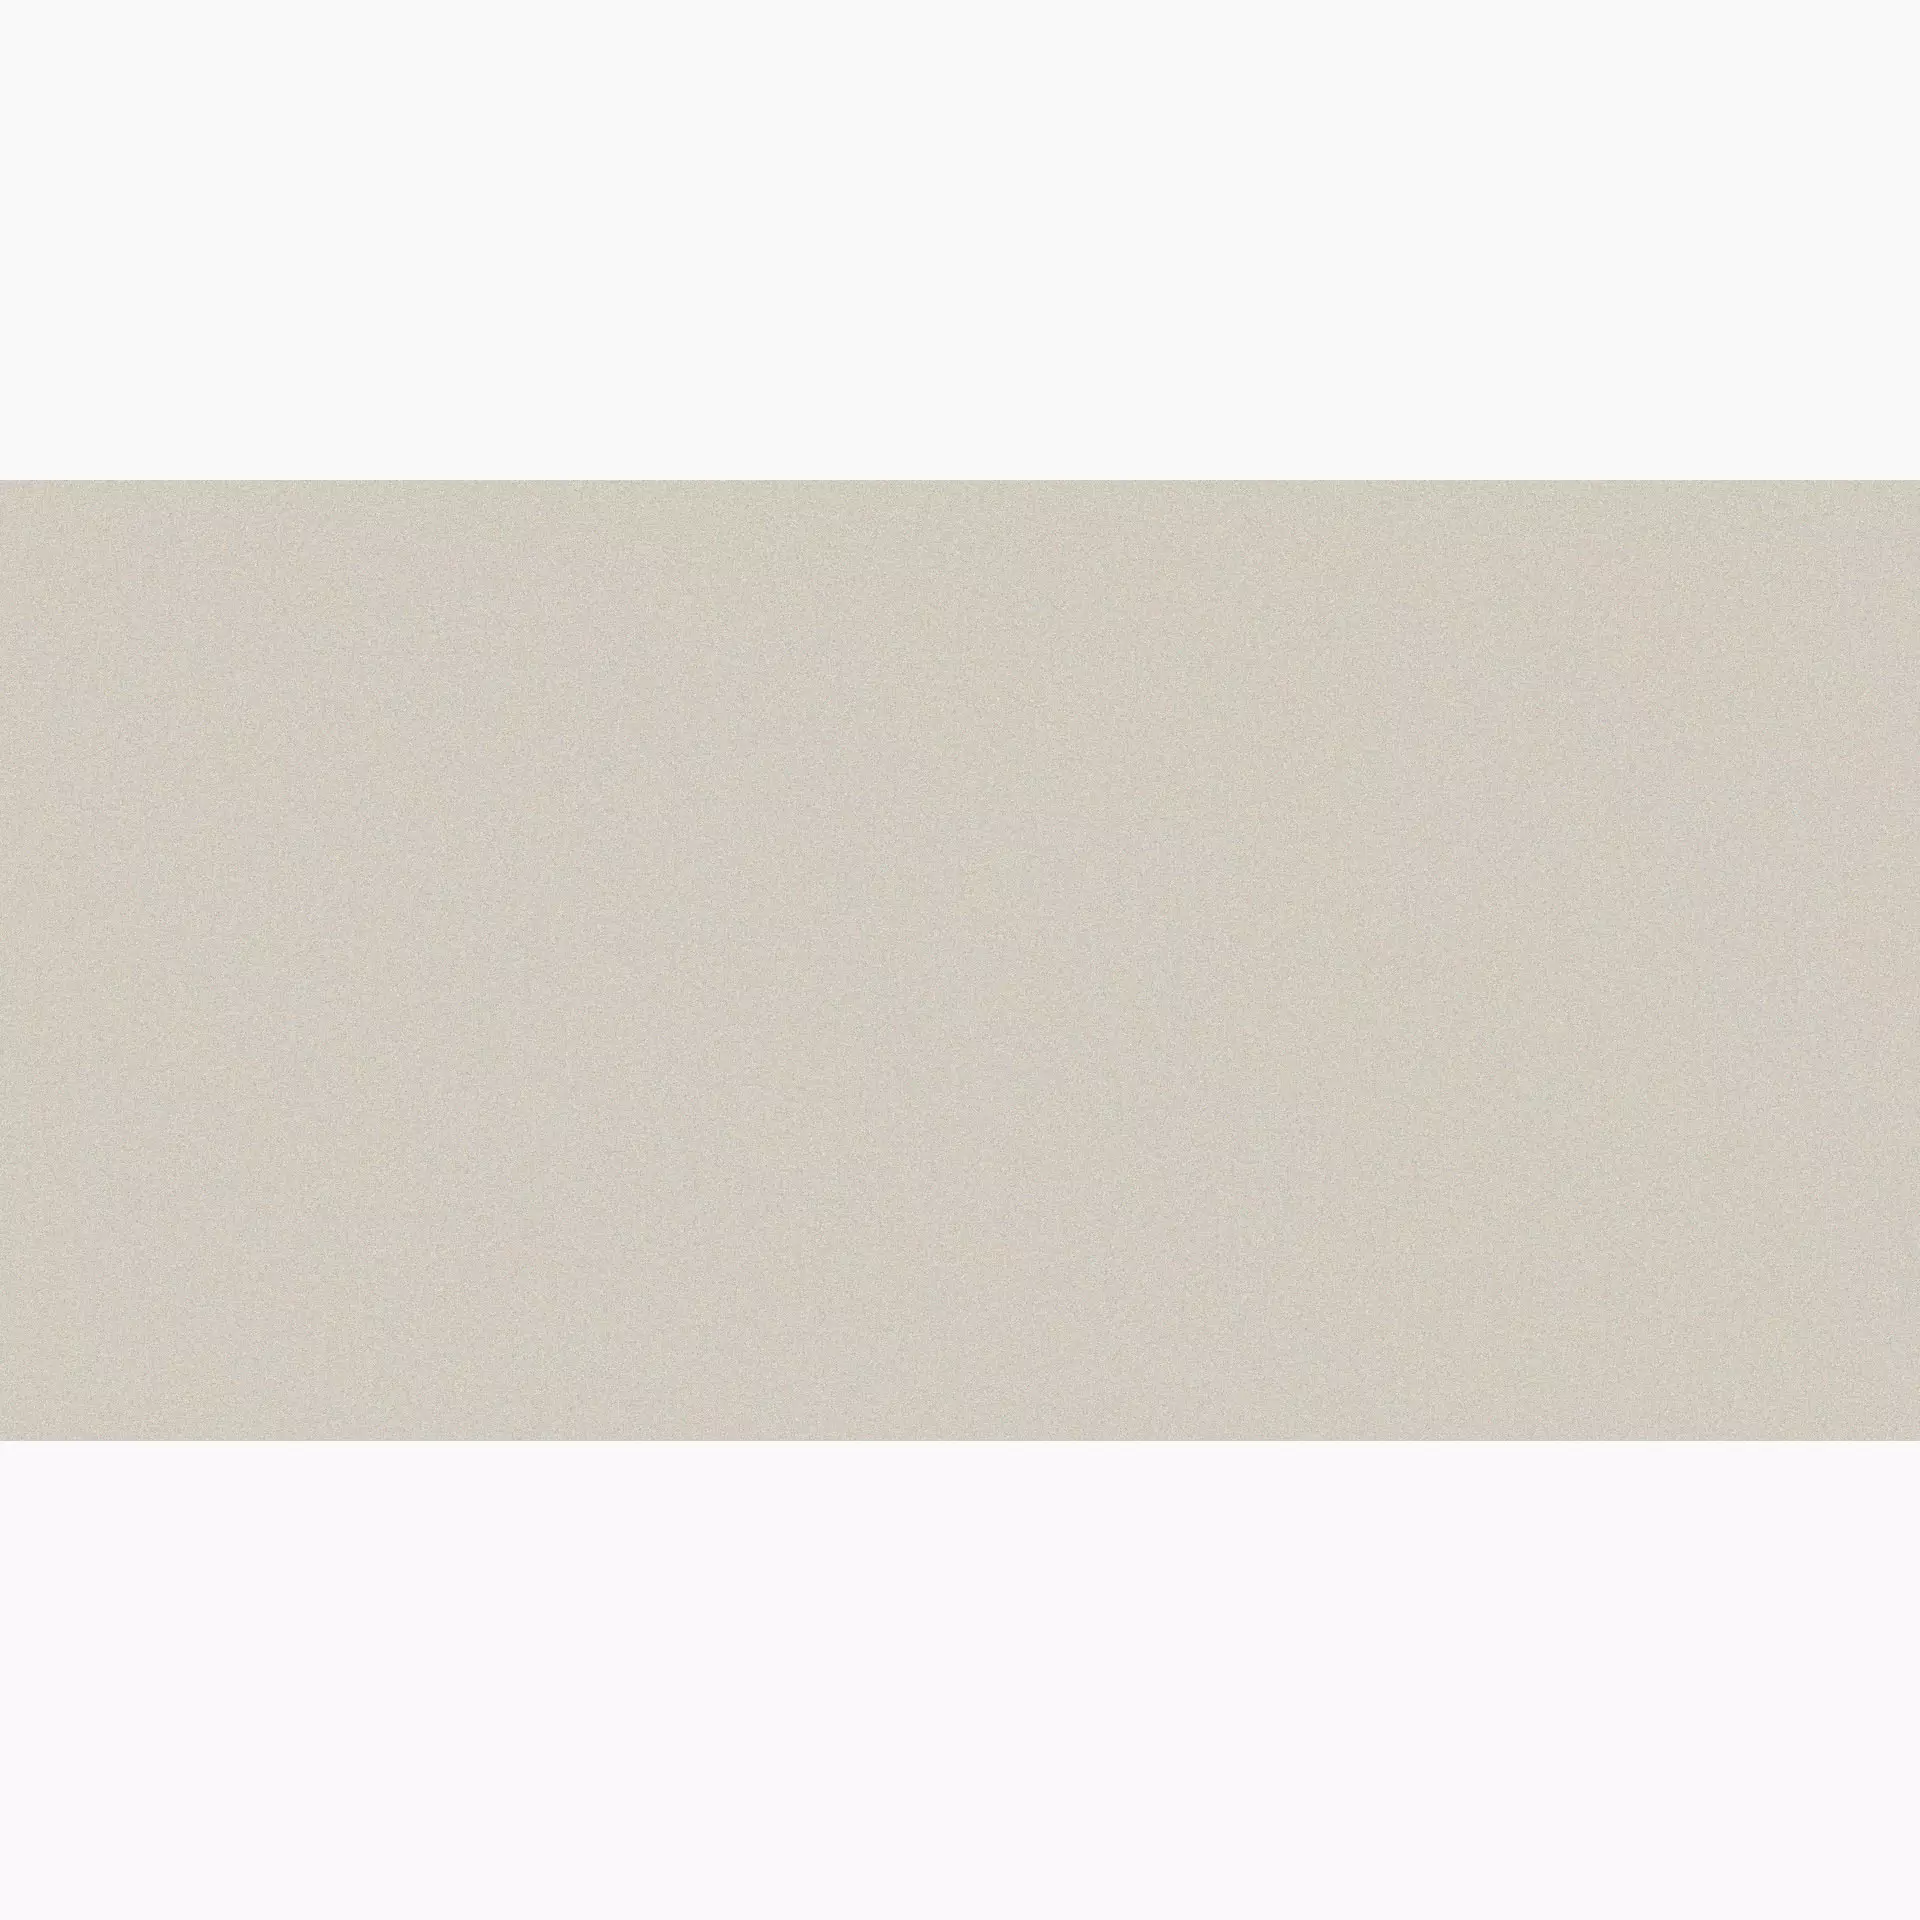 Casalgrande Architecture Warm Grey Naturale – Matt 4790147 30x60cm rectified 9,4mm